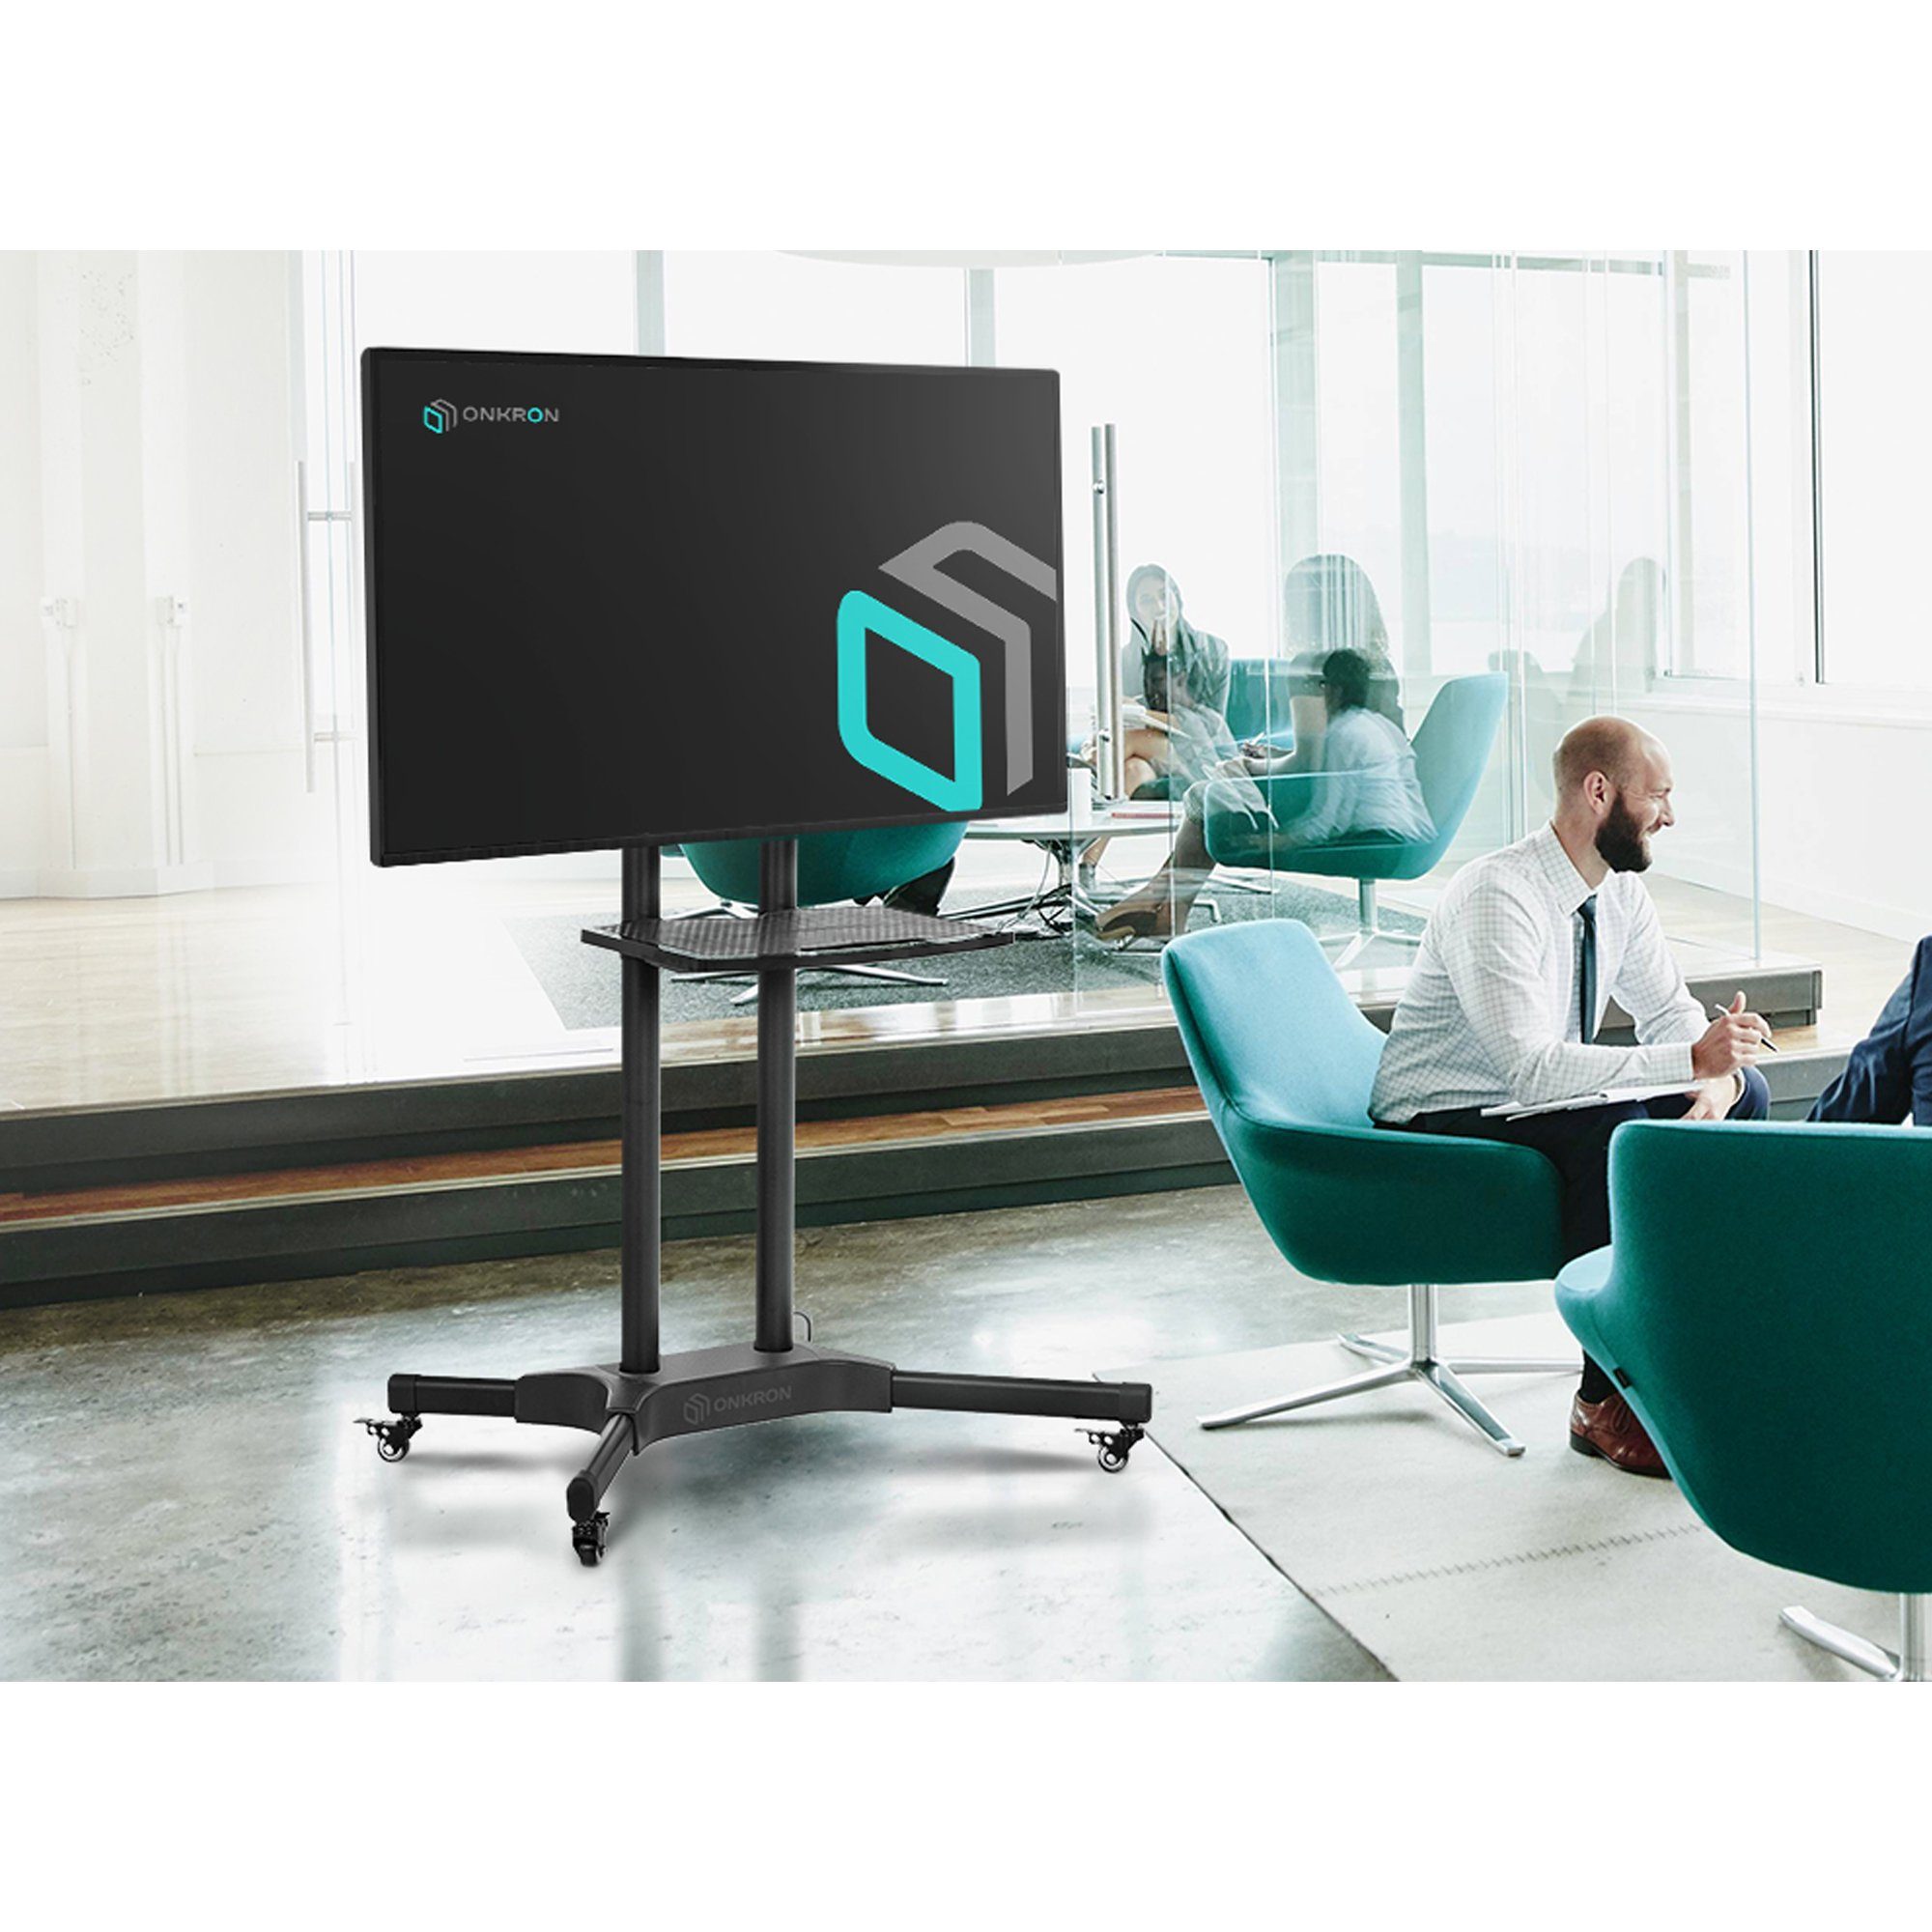 ONKRON designed to mm TV - Rollen Ständer Standfuss mit rollbar Ständer höhenverstellbar support TV-Regal Zoll TV bis 40-65 100x100-600x400 45 kg, TV VESA